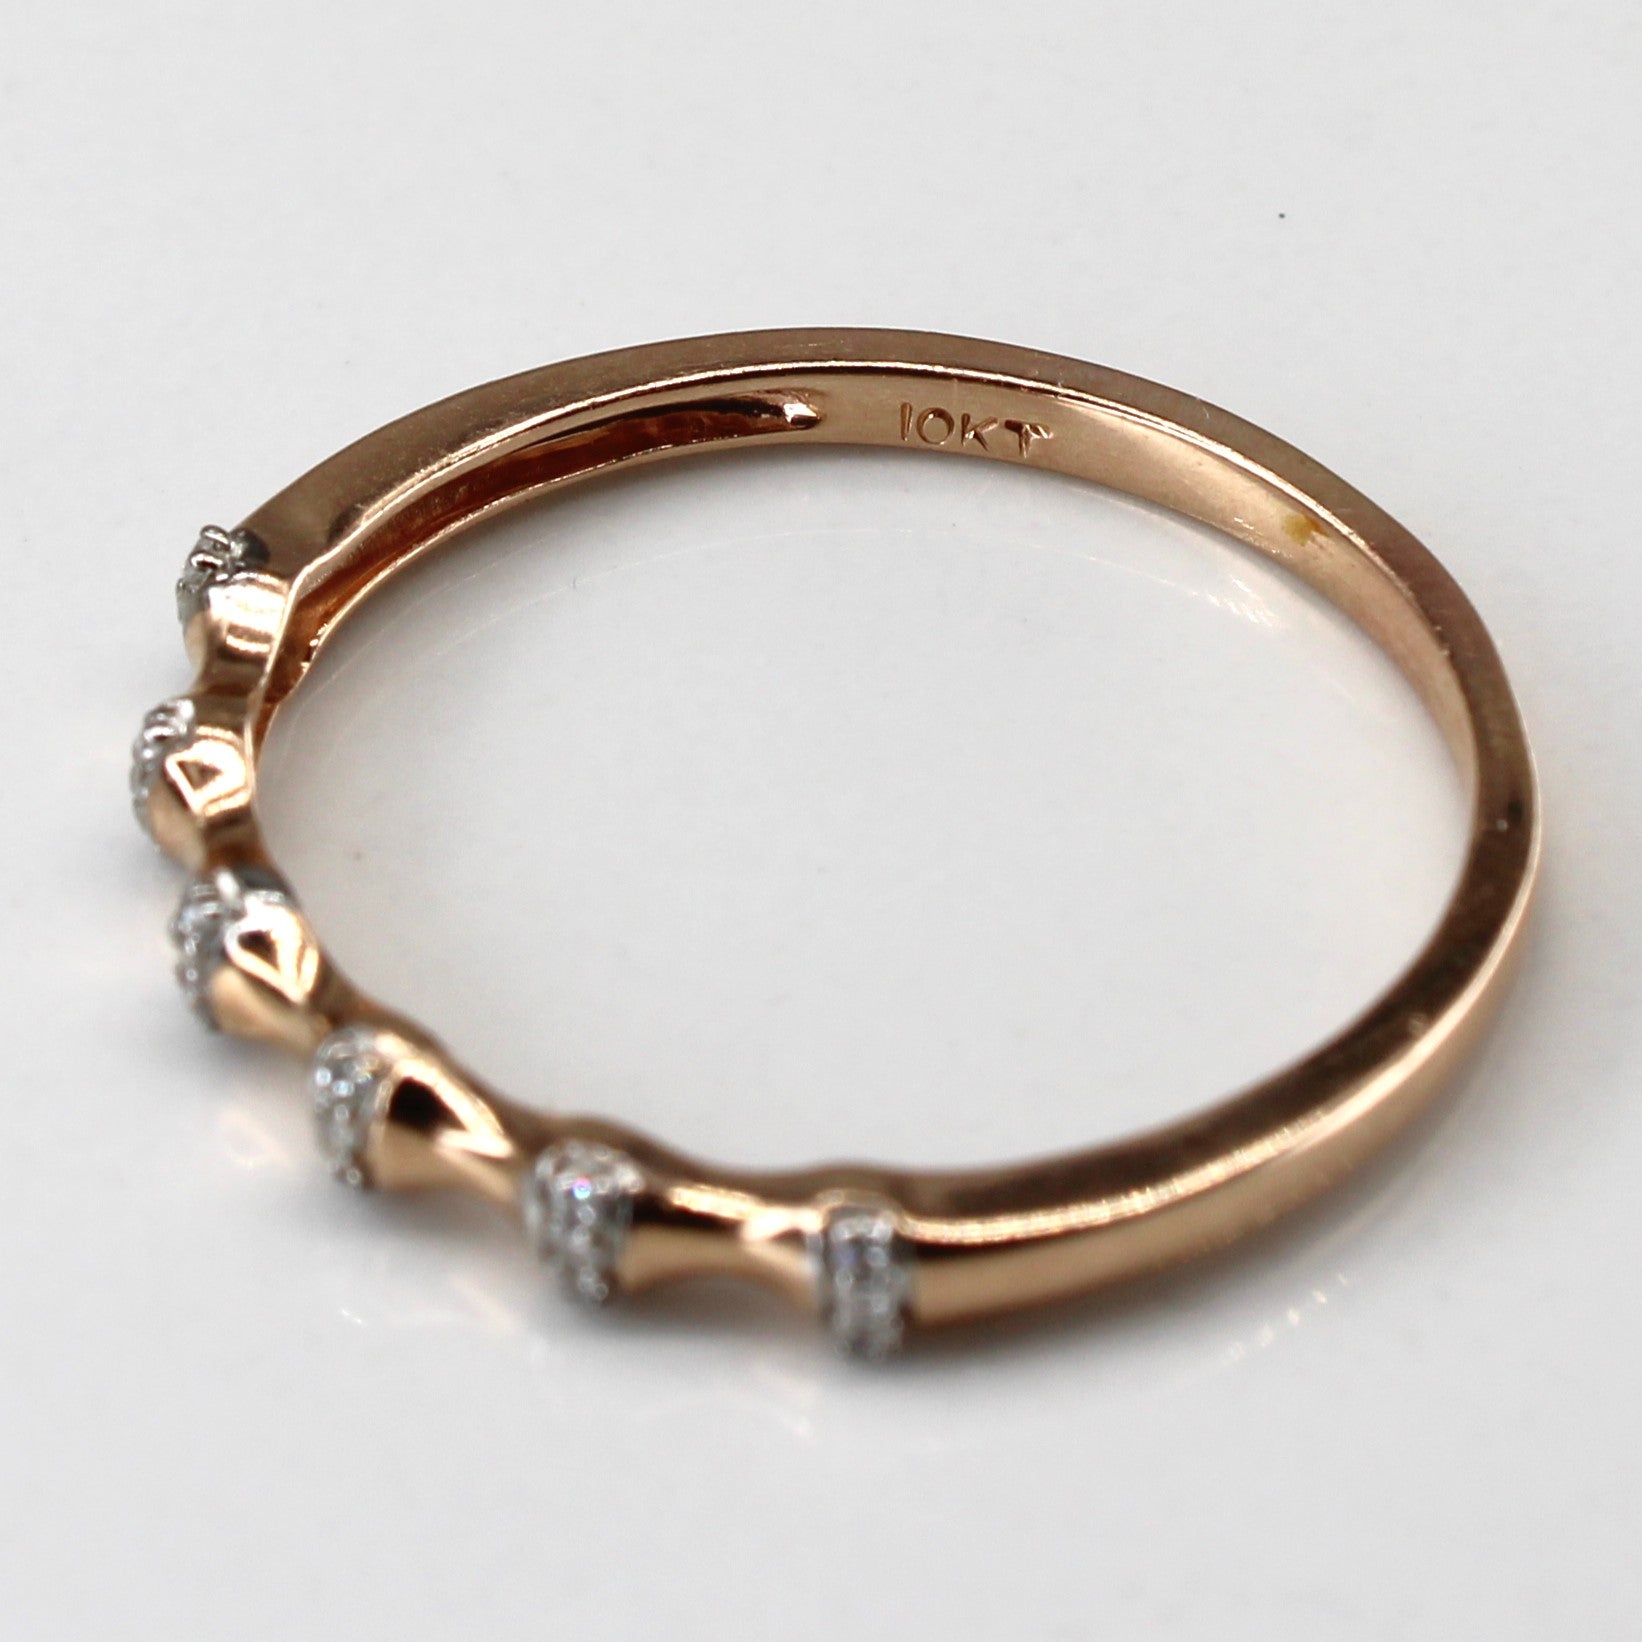 Diamond Rose Gold Ring | 0.06ctw| SZ 11.5 |